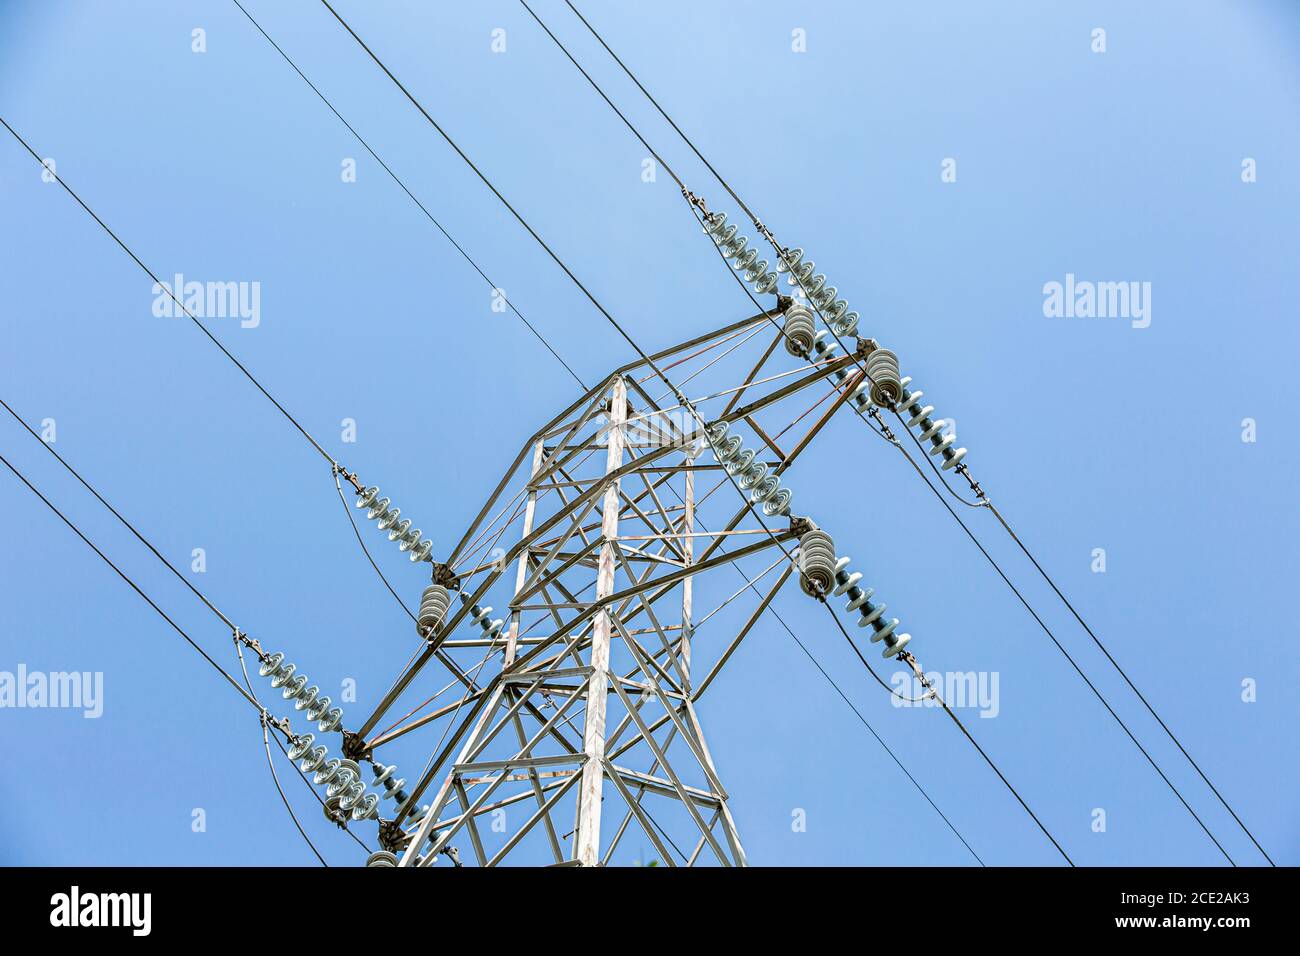 Vue rapprochée d'une tour de transmission et de lignes électriques Banque D'Images